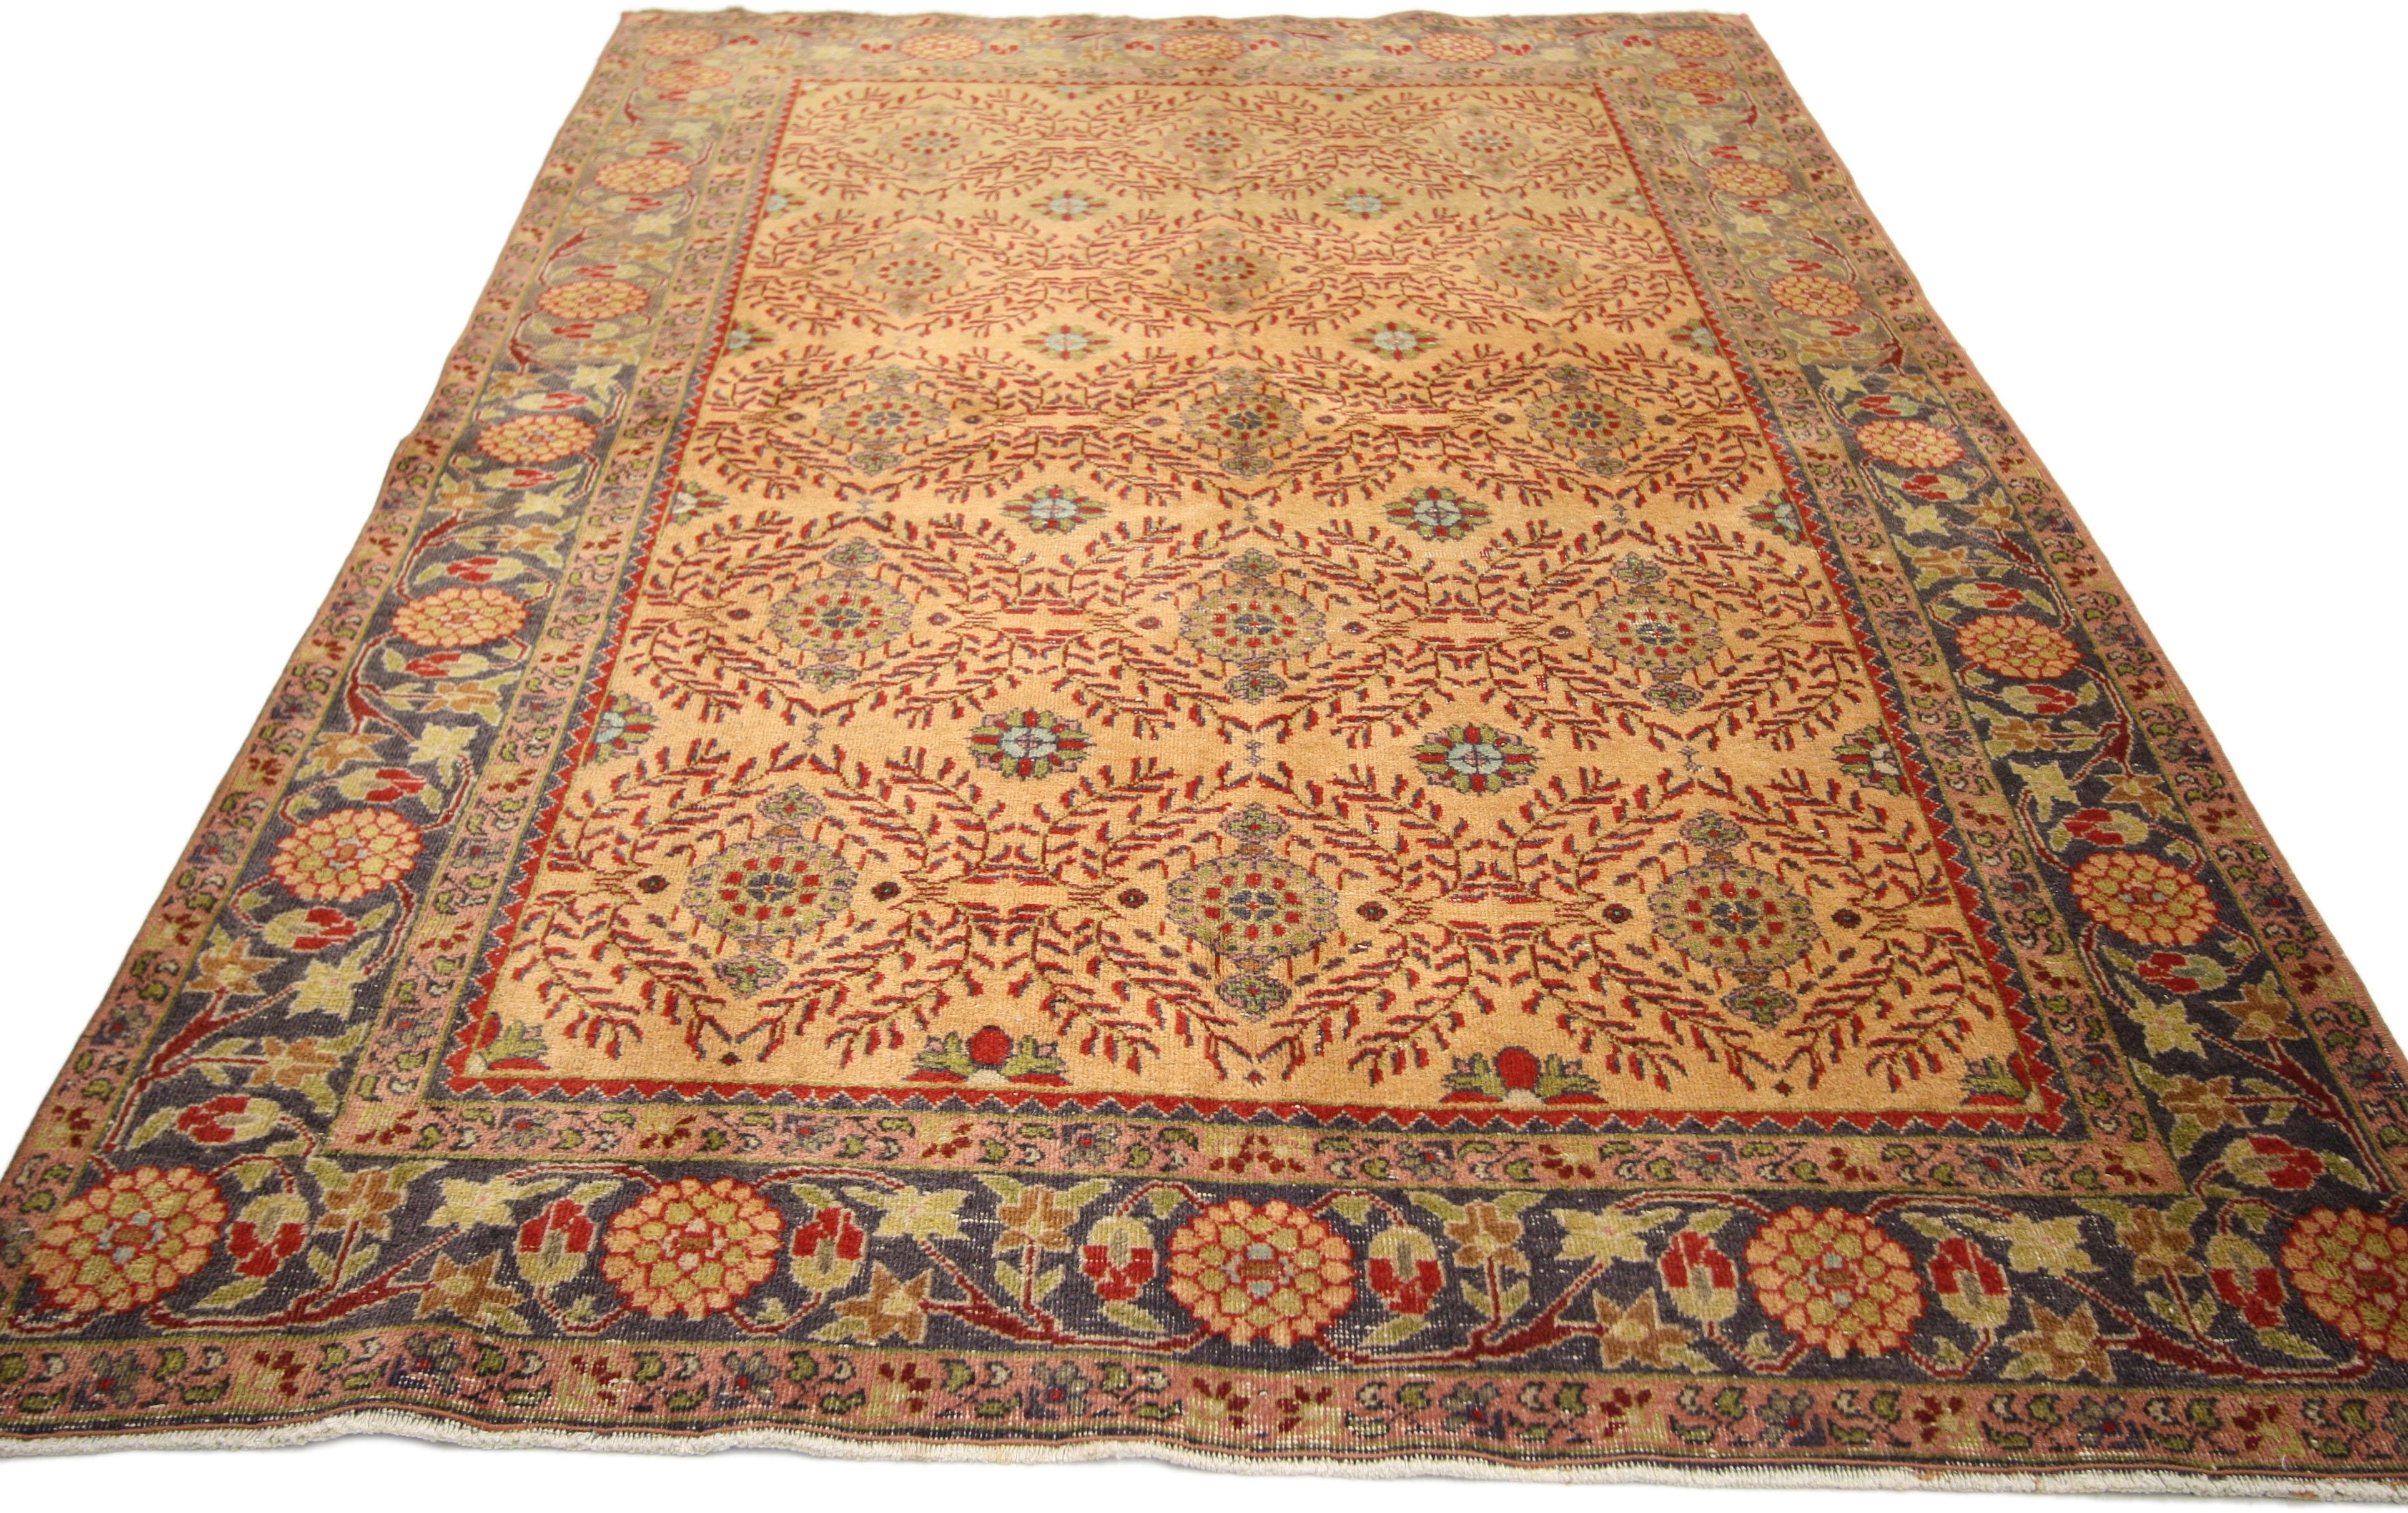 52336, tapis vintage turc Oushak de style espagnol. Ce tapis turc Oushak vintage noué à la main, de style espagnol, présente un motif répétitif sur toute la surface, composé d'orbes lobés avec des pendentifs placés dans un treillis angulaire de